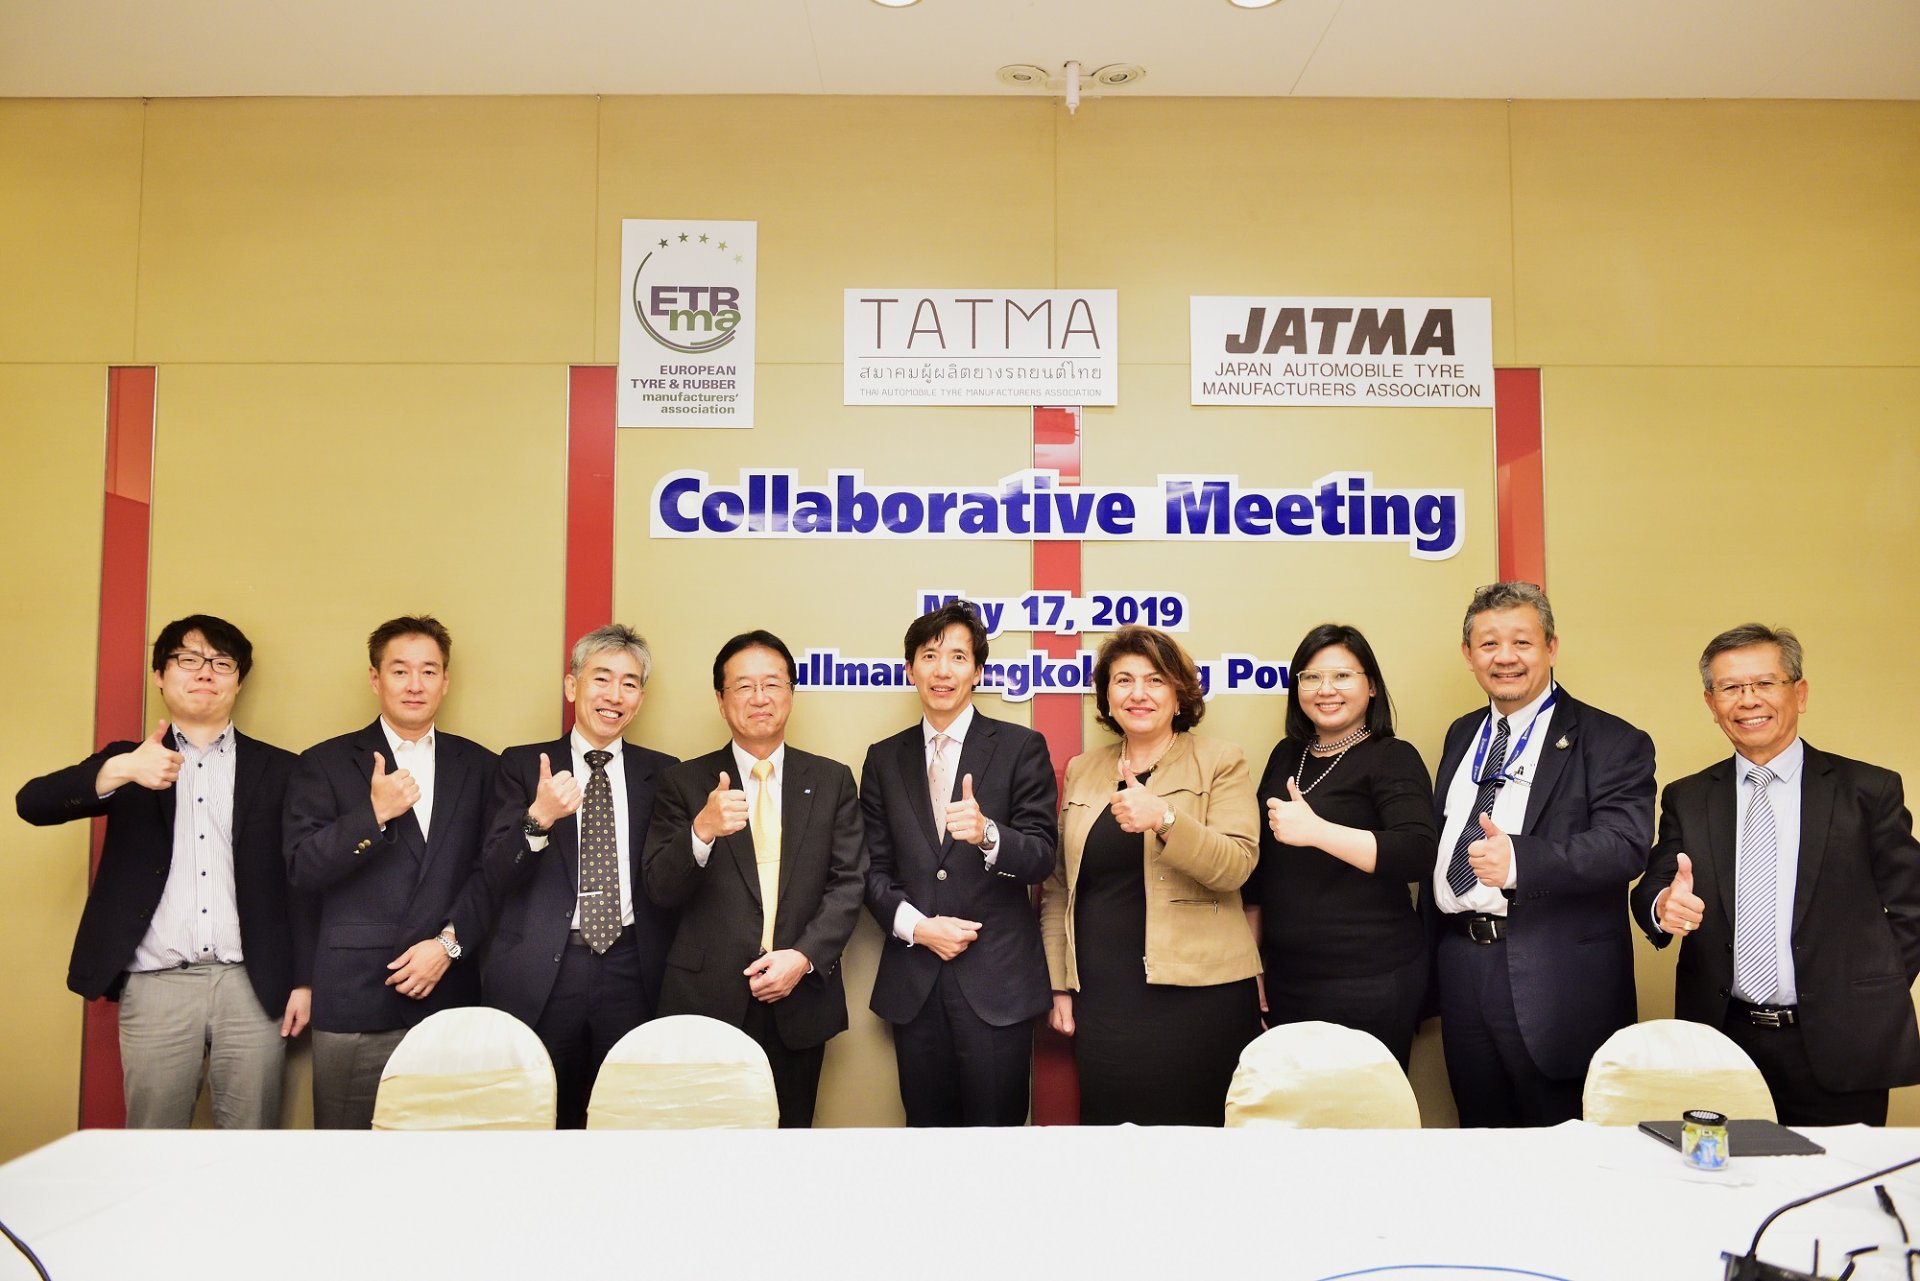 สมาคมผู้ผลิตยางรถยนต์ไทย (TATMA) เป็นเจ้าภาพจัดการประชุมความร่วมมือระหว่าง 3 สมาคม